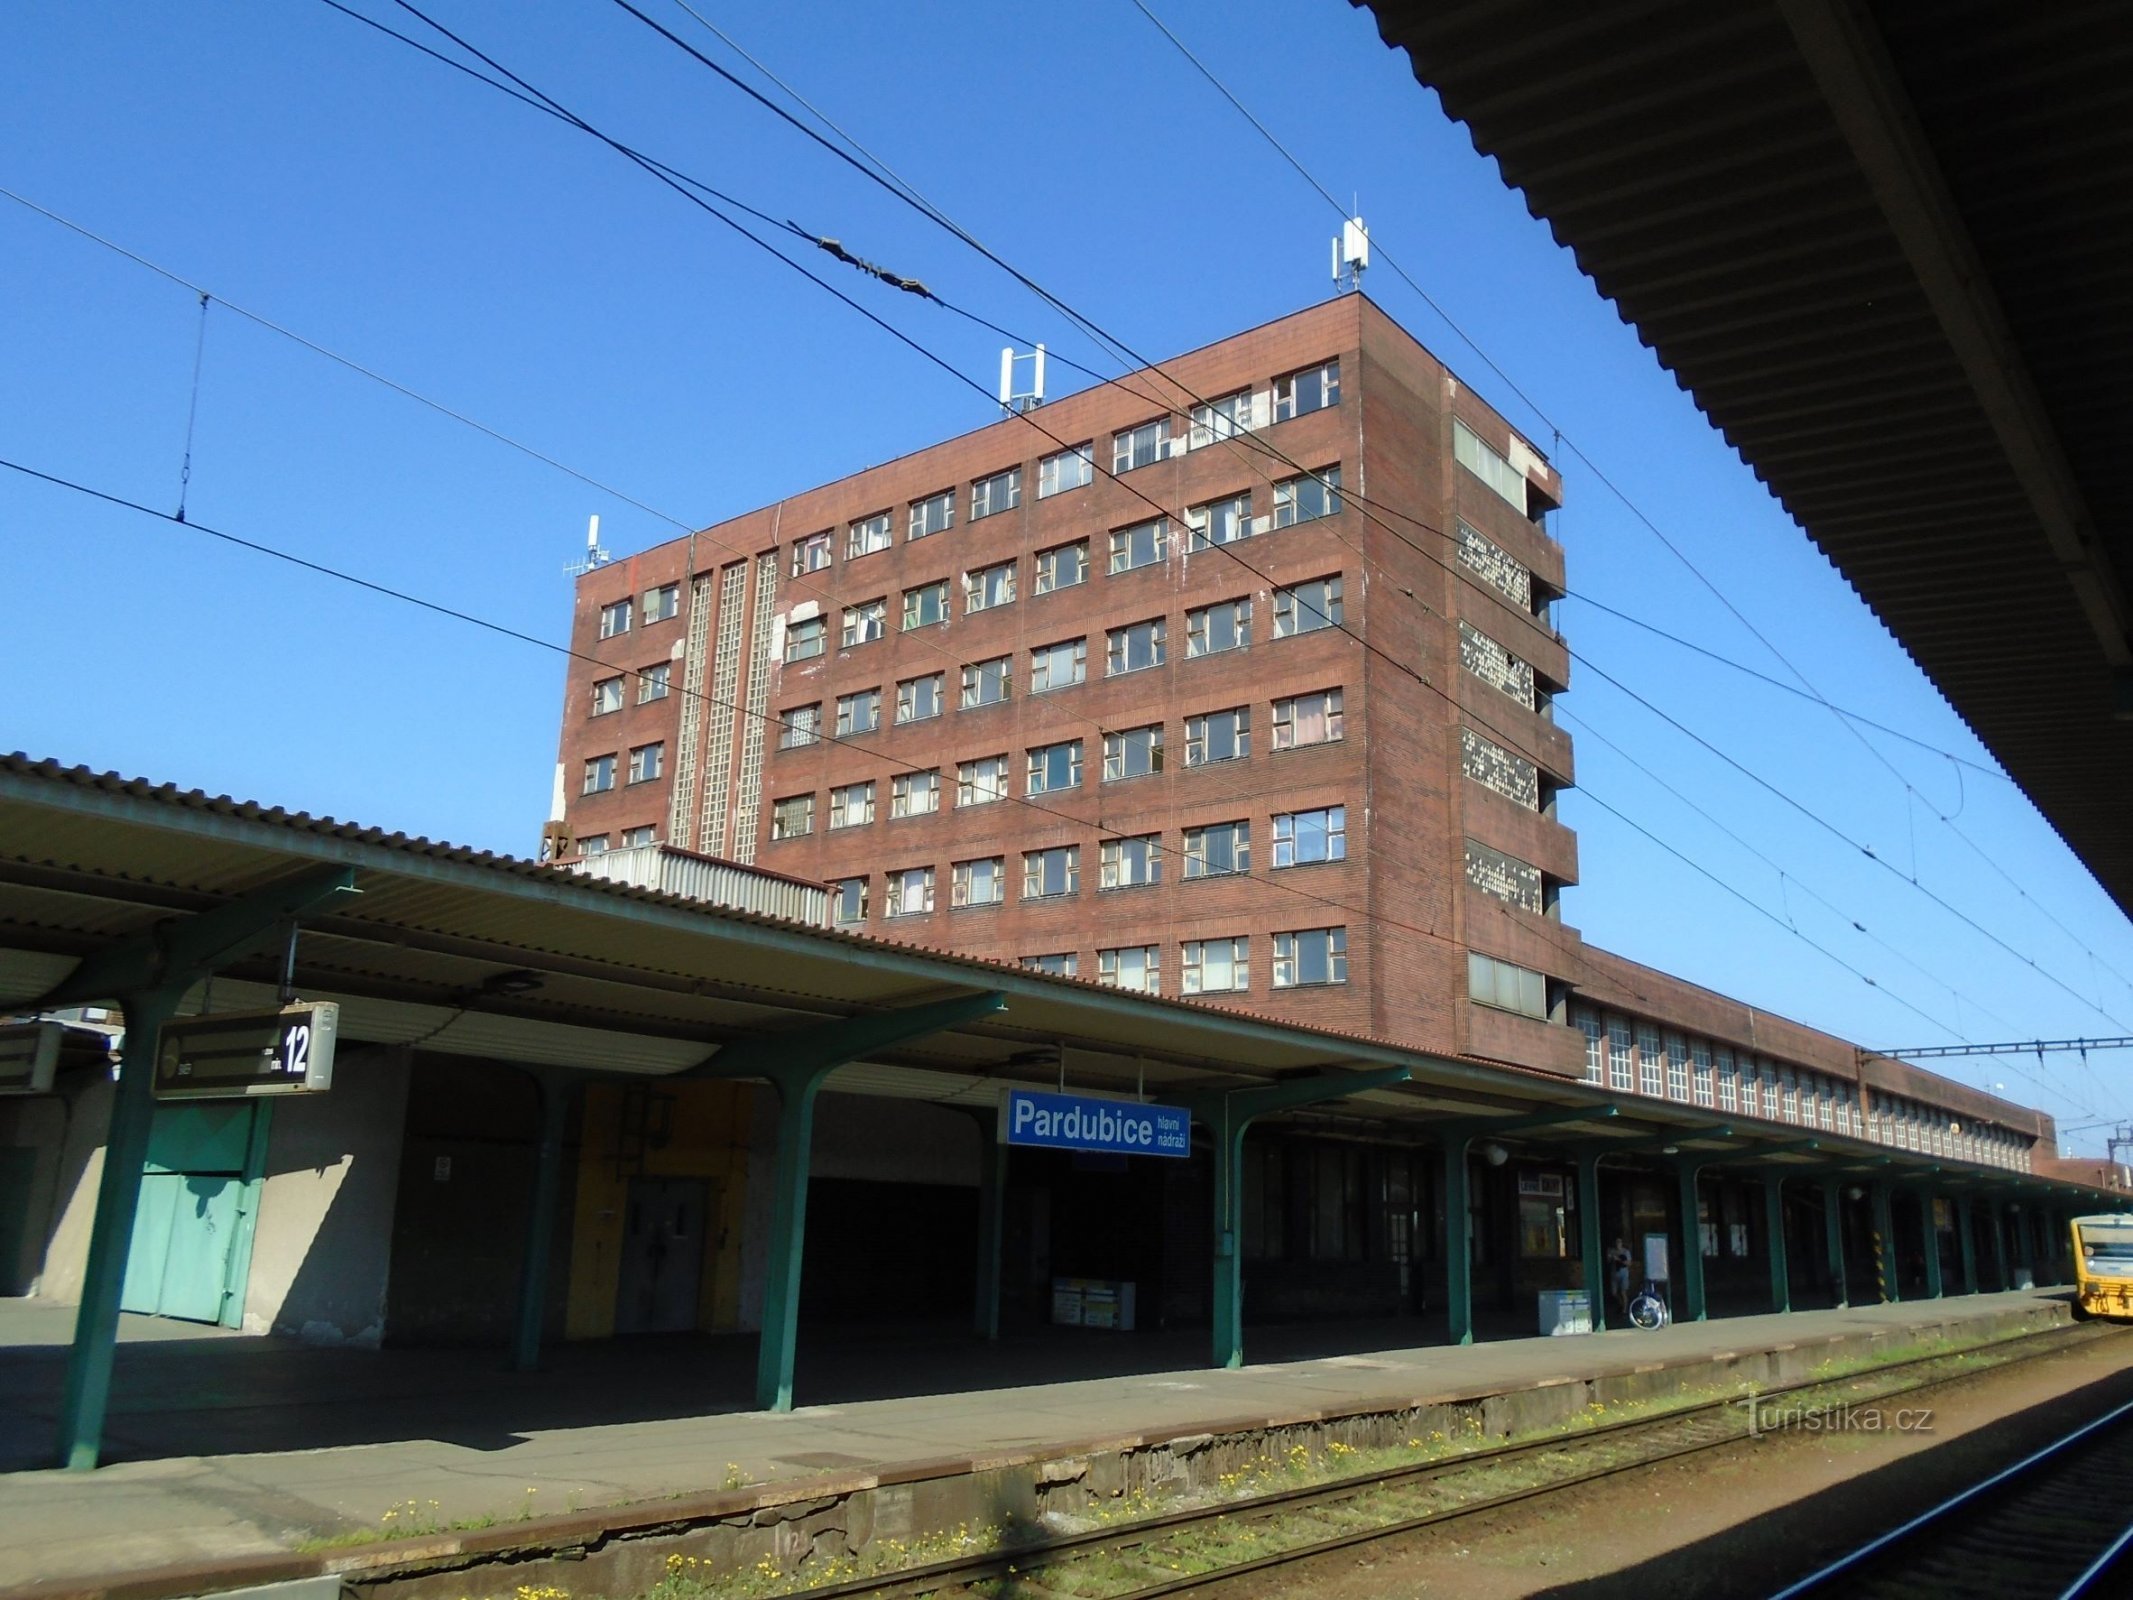 中央火车站 (Pardubice, 18.4.2018/XNUMX/XNUMX)